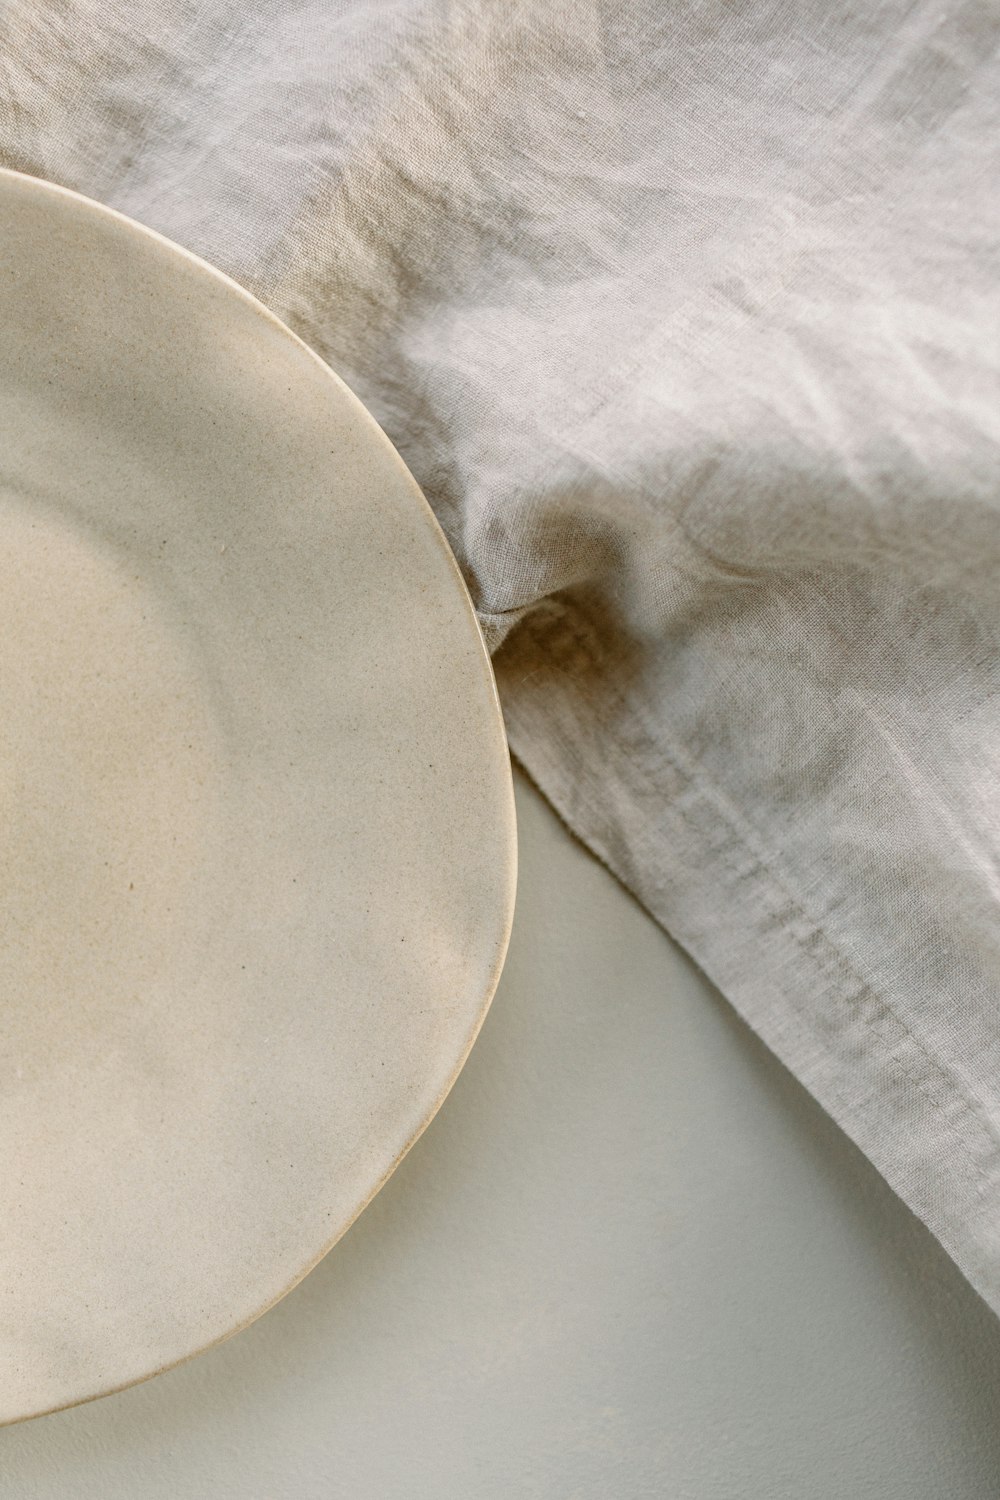 um prato branco sentado em cima de uma mesa branca